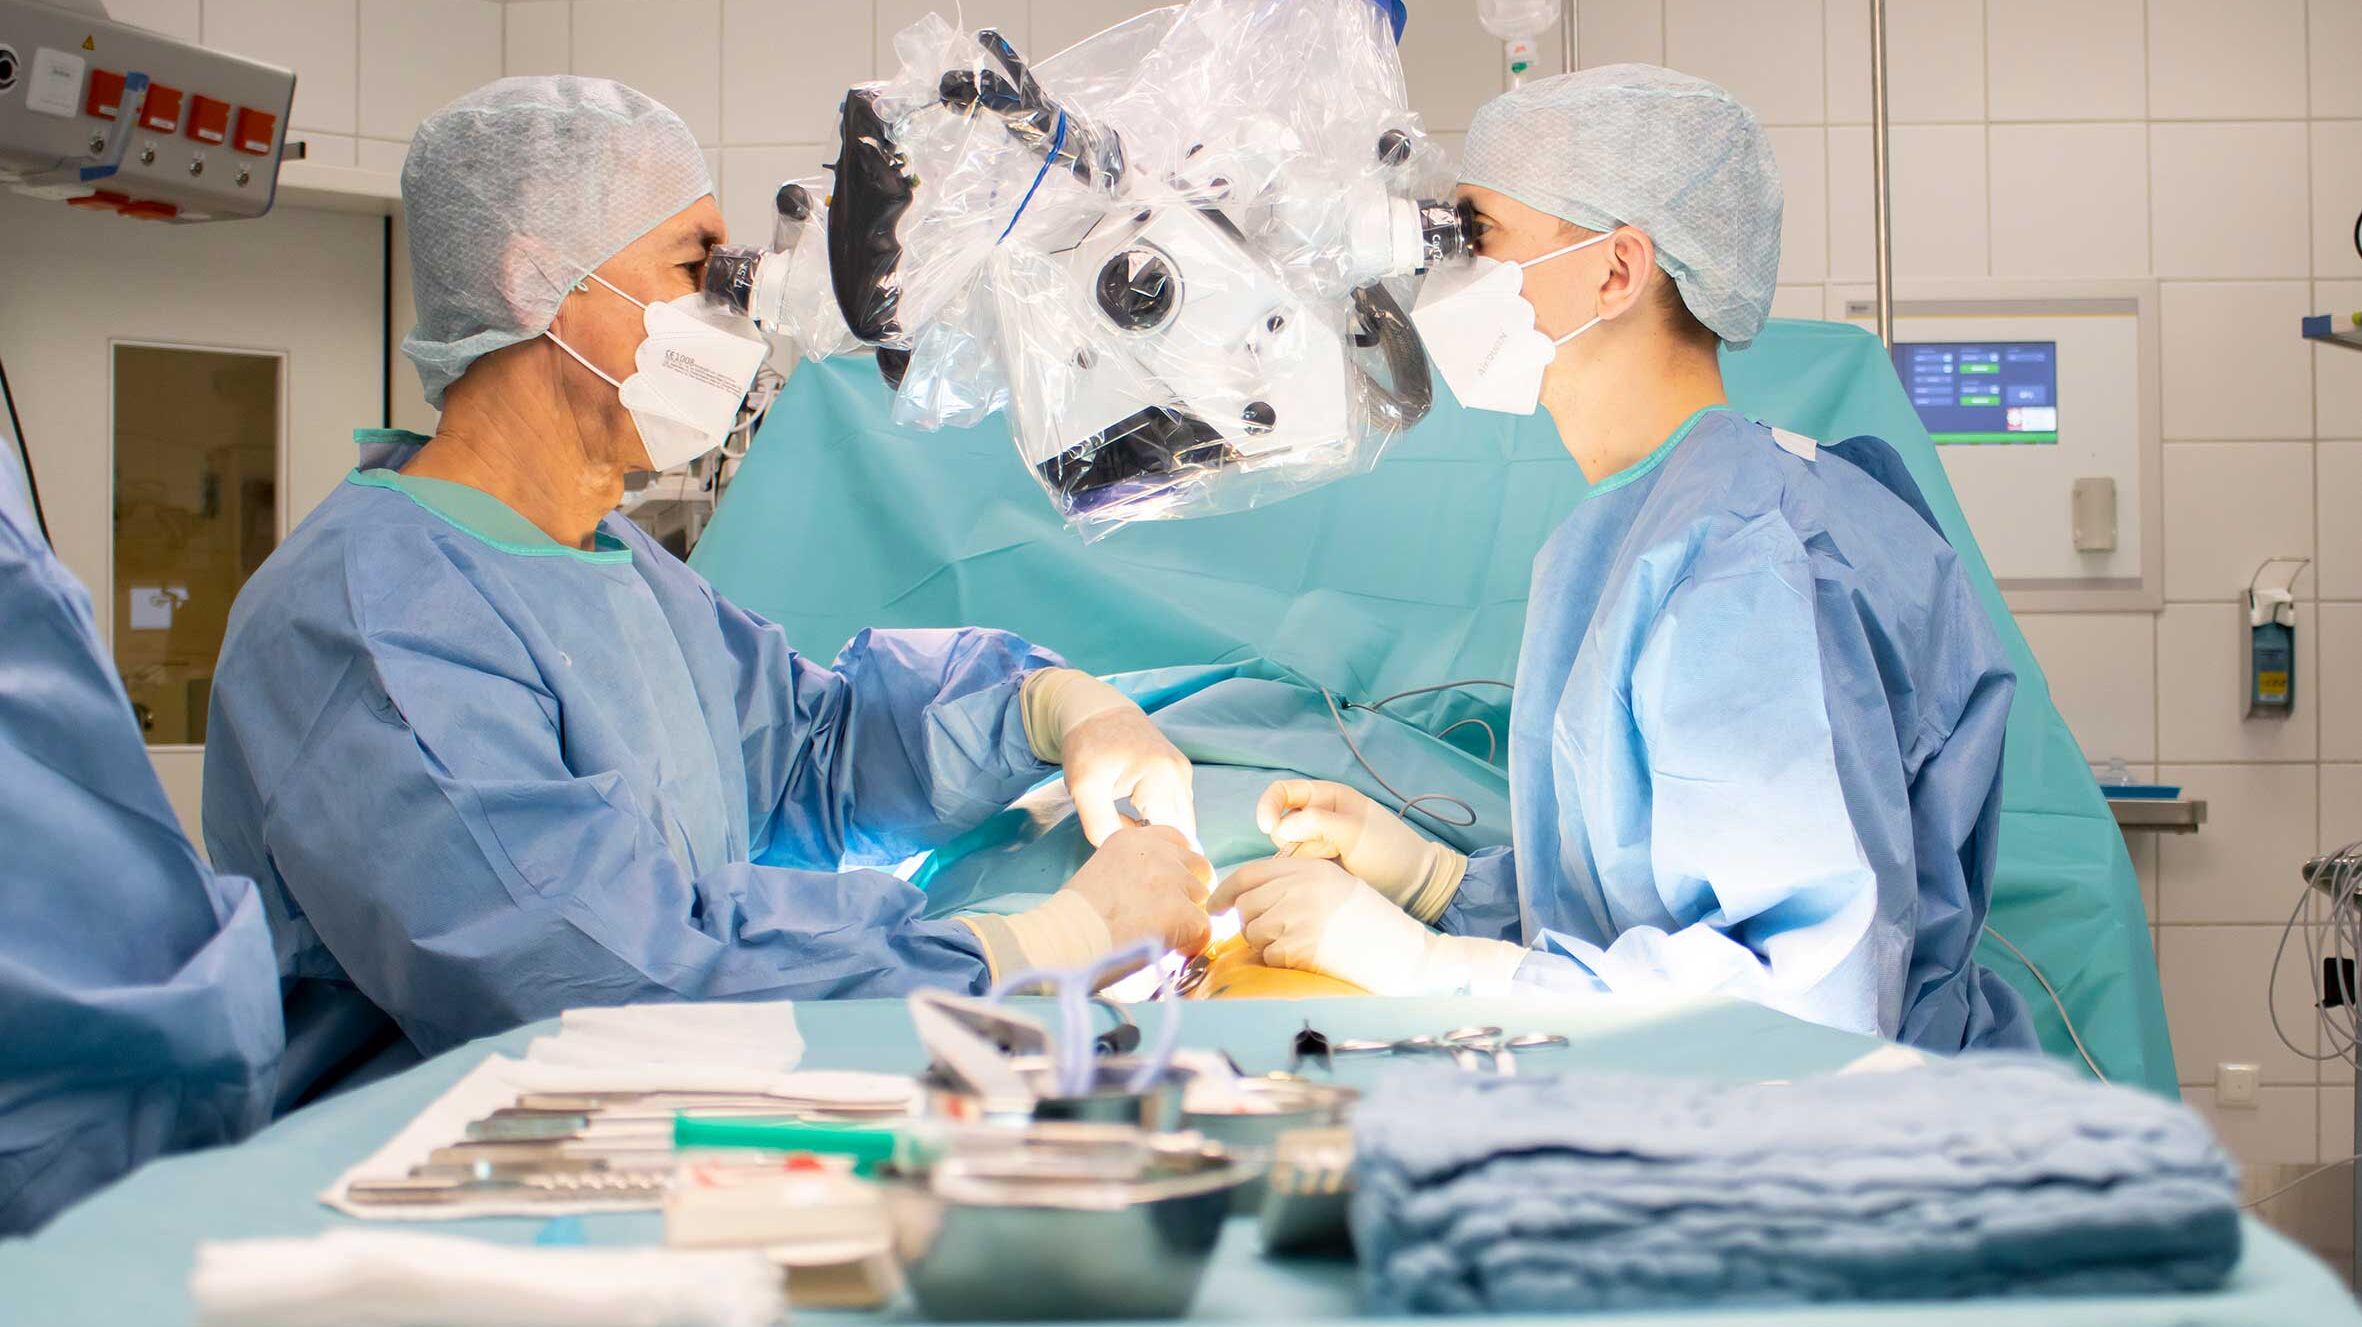 Operationssaal mit 2 Ärzten